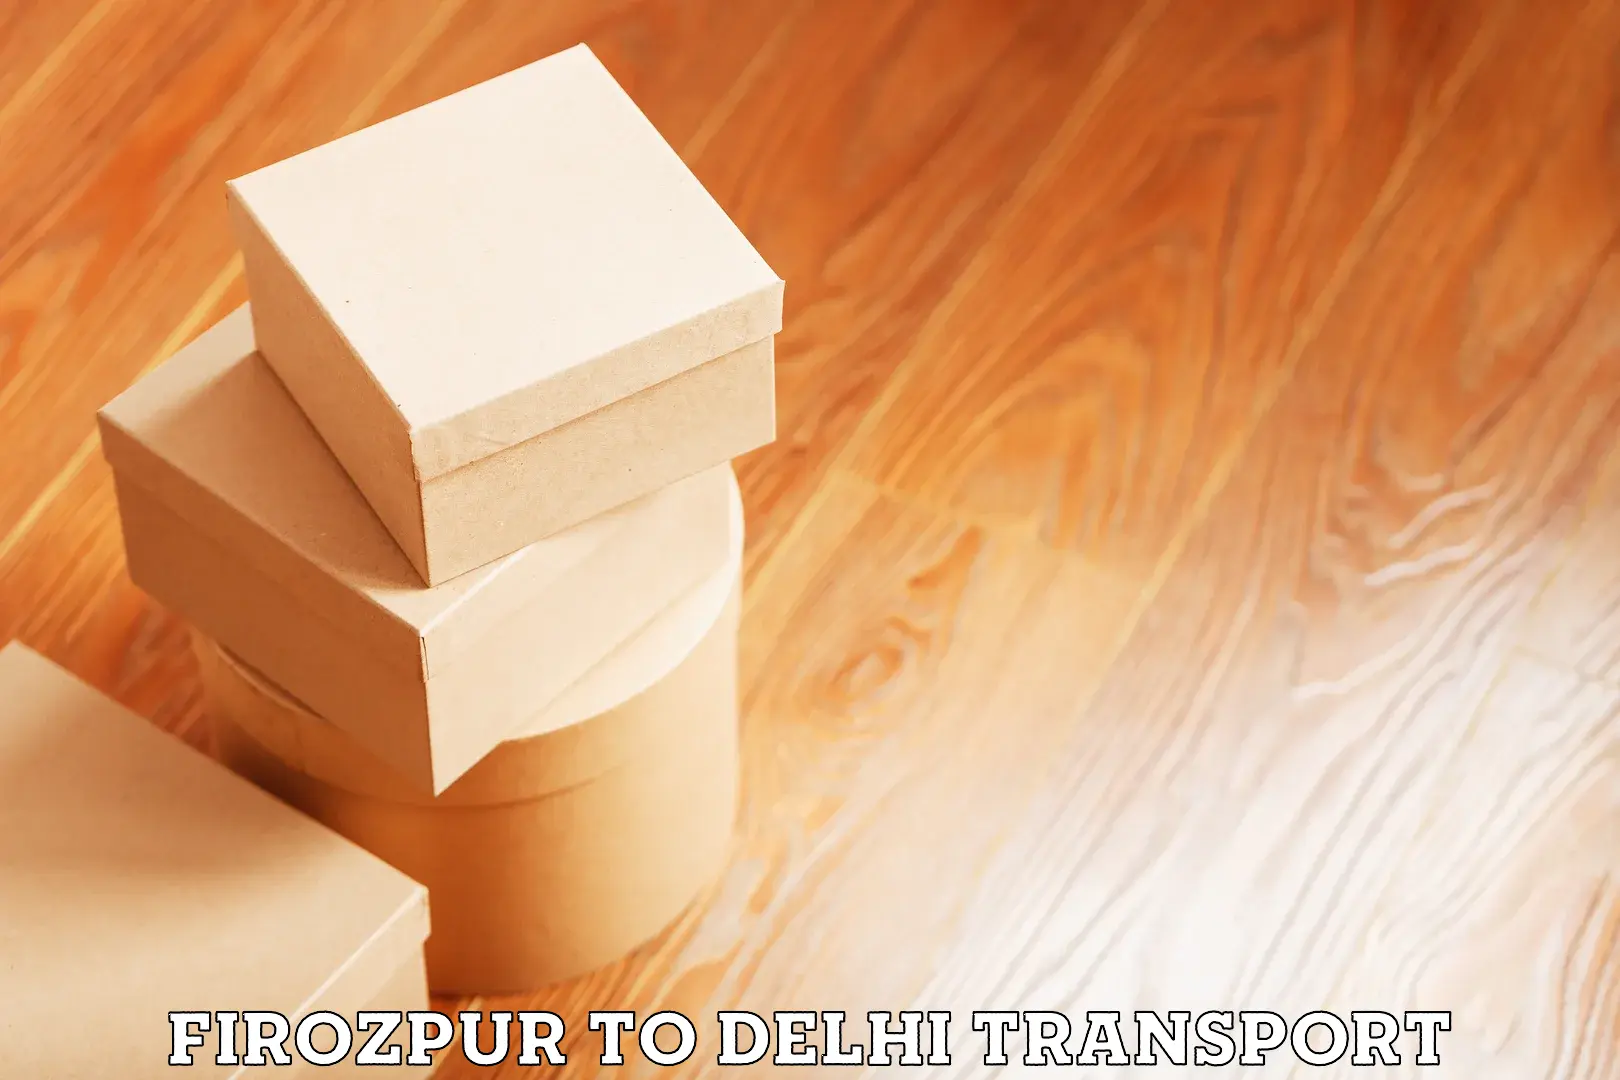 All India transport service Firozpur to Sarojini Nagar